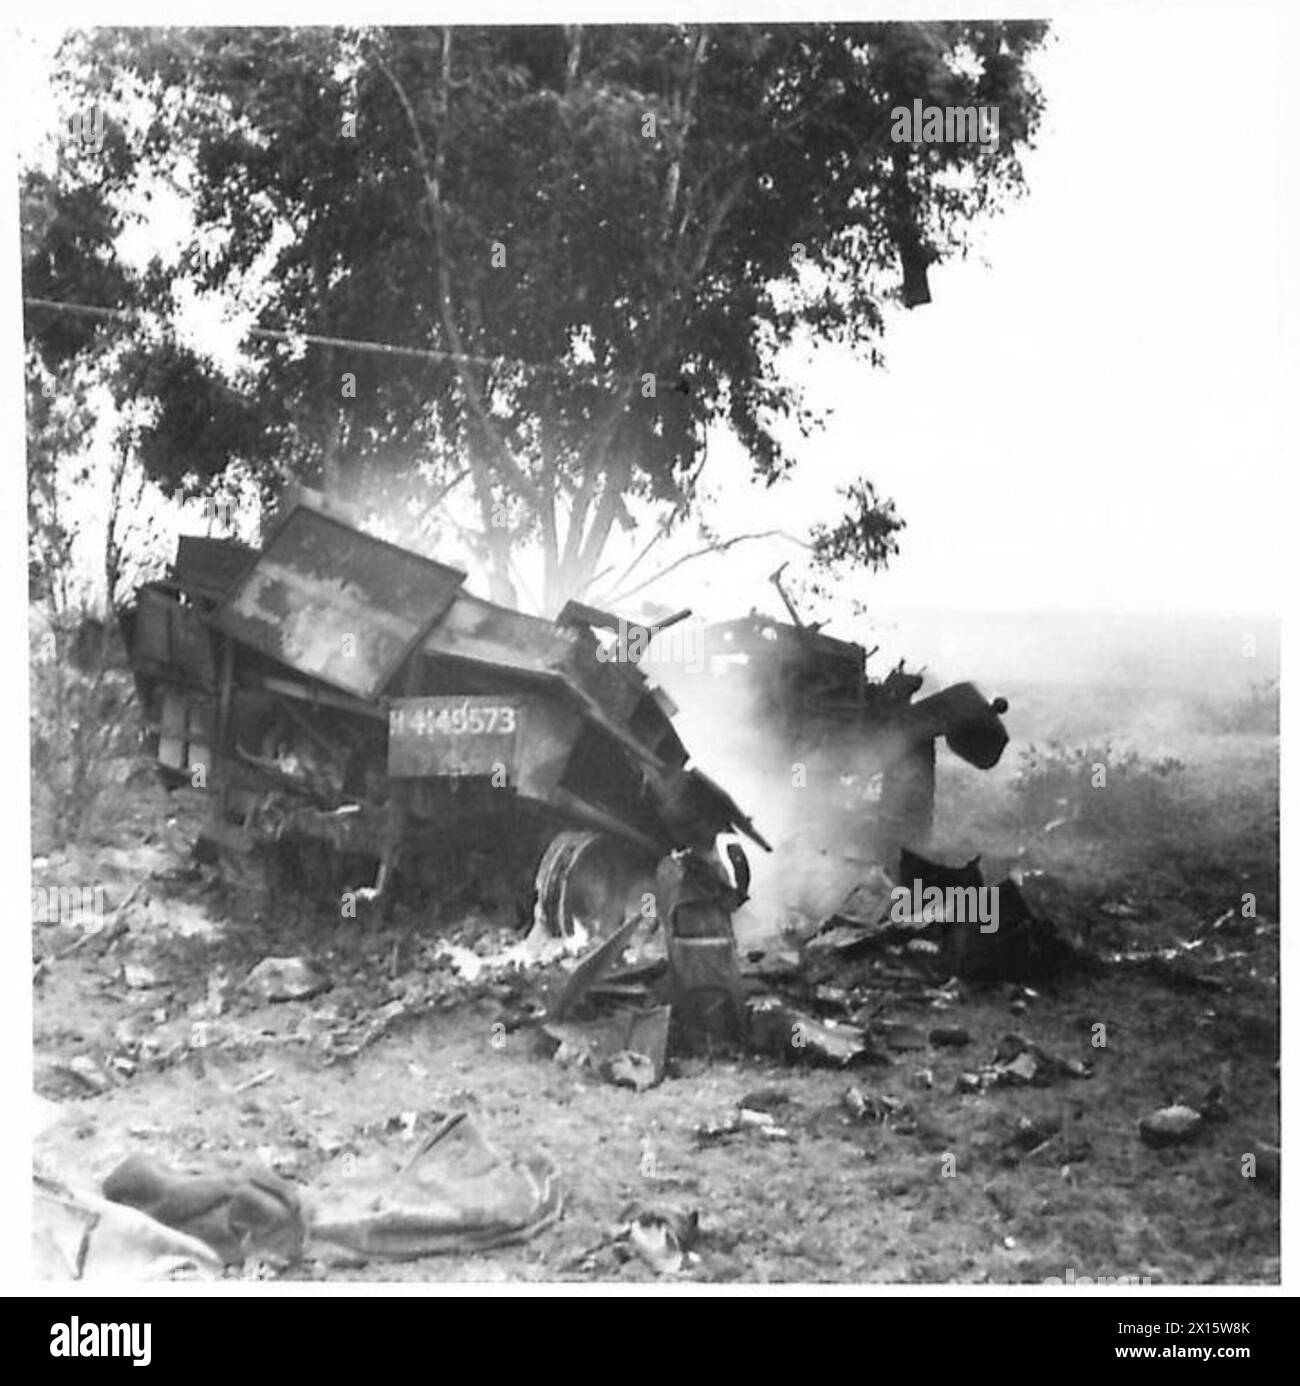 DIE BRITISCHE ARMEE IM TUNESIENFELDZUG, NOVEMBER 1942–MAI 1943 – Ein ausgebrannter Lkw der 6. Panzerdivision wurde von der deutschen Patrouille in der Nähe von Bou Arada zerstört. Die Schlacht von Bou Arada. Ein von den Deutschen gehaltener Beobachtungsposten war als „Two Tree“ Hill bekannt, da auf seinem höchsten Punkt zwei Bäume wuchsen. Am Abend des 10. Januar näherte sich eine Patrouille deutscher Panzer, die etwa 15 Mann stark waren, und erreichte den Stadtrand von Bou Arada, wurde aber zurückgetrieben. Die Beobachtung ergab, dass eine Stockfoto